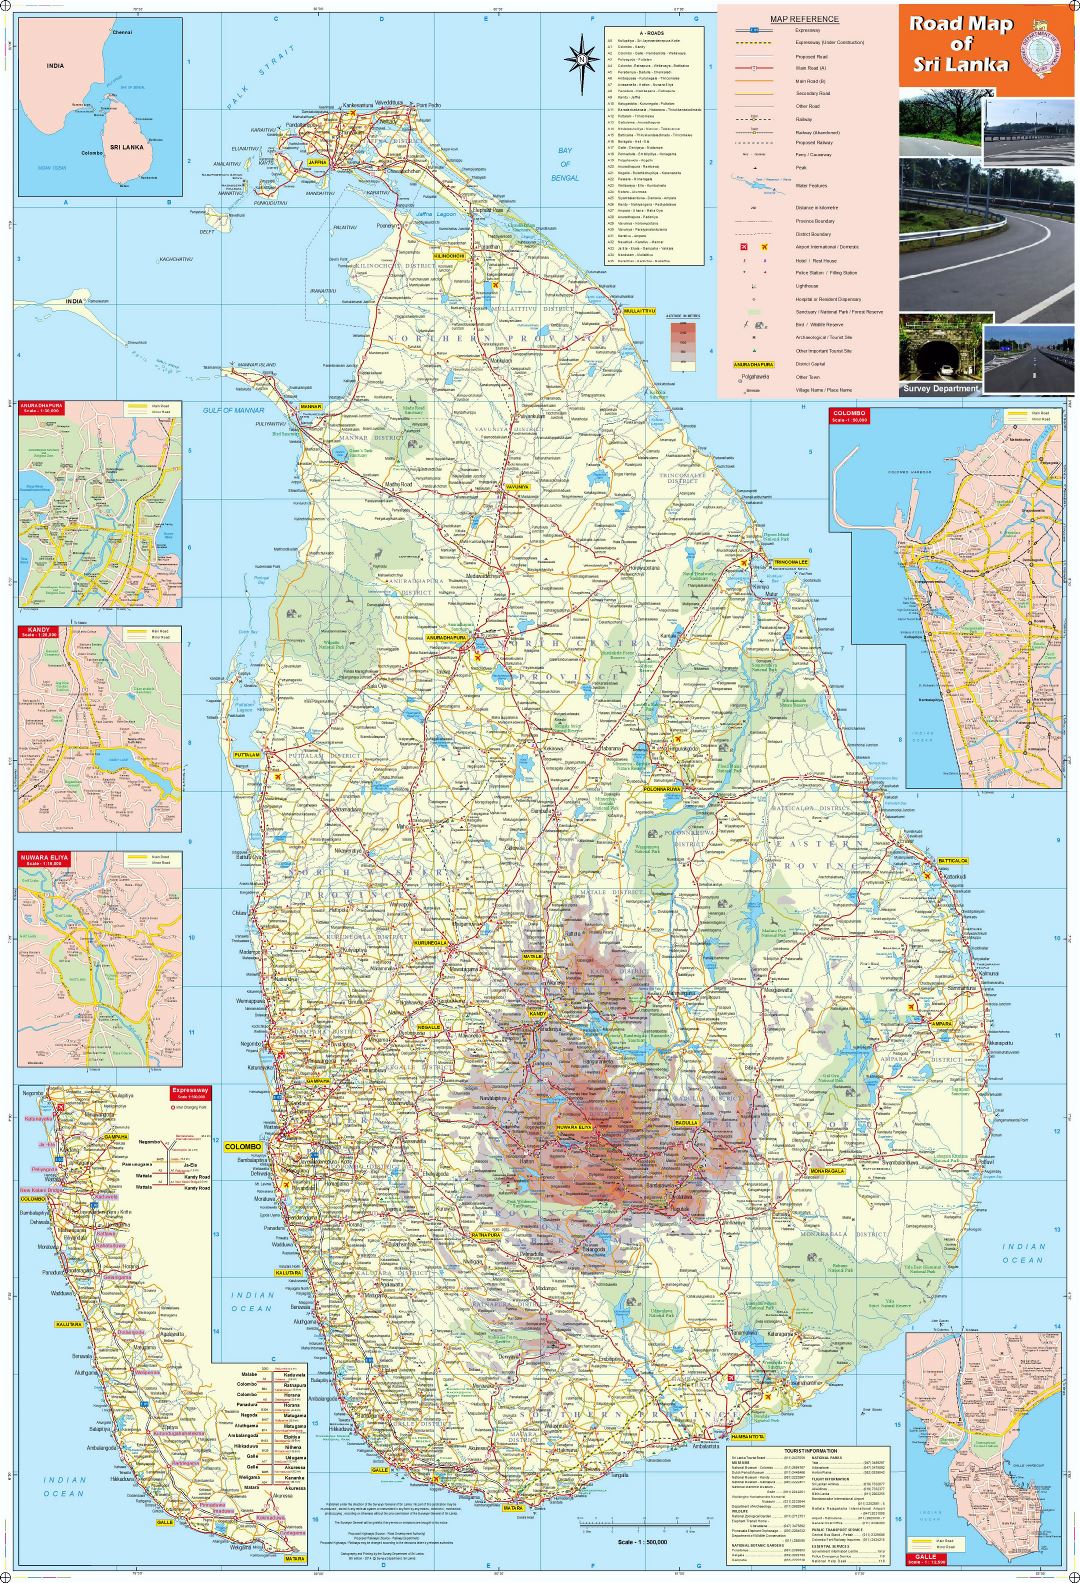 Большая детальная карта Шри-Ланки со всеми городами, дорогами, железными дорогами, аэропортами и другими пометками